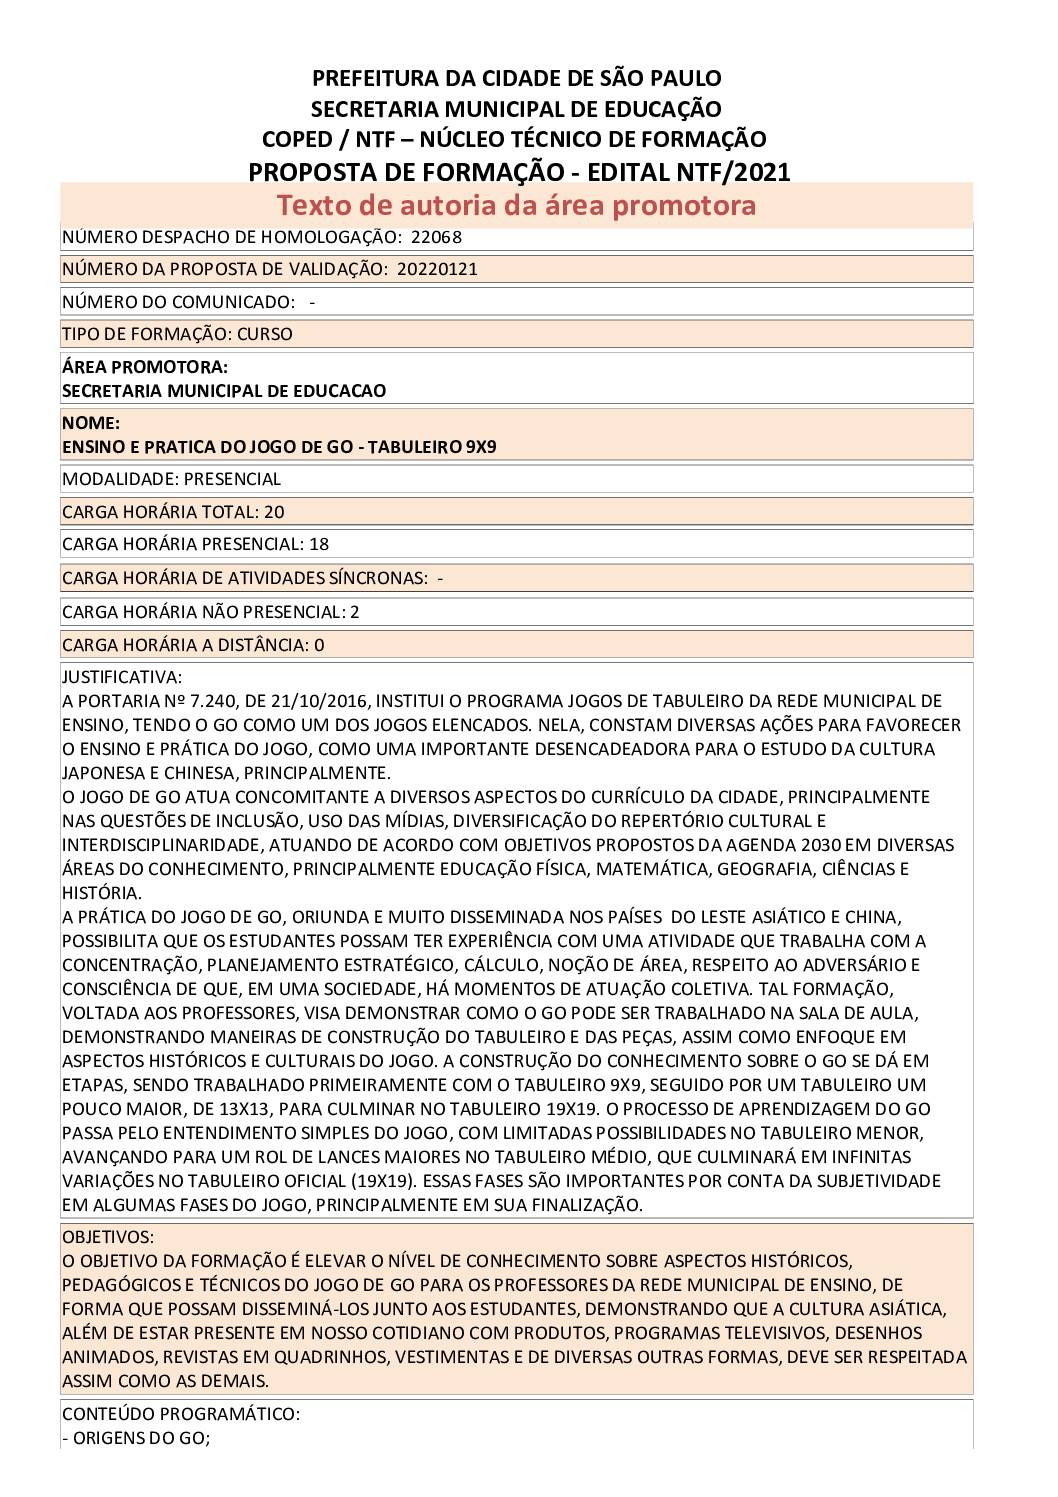 PDF com informações sobre o curso: ENSINO E PRATICA DO JOGO DE GO - TABULEIRO 9X9